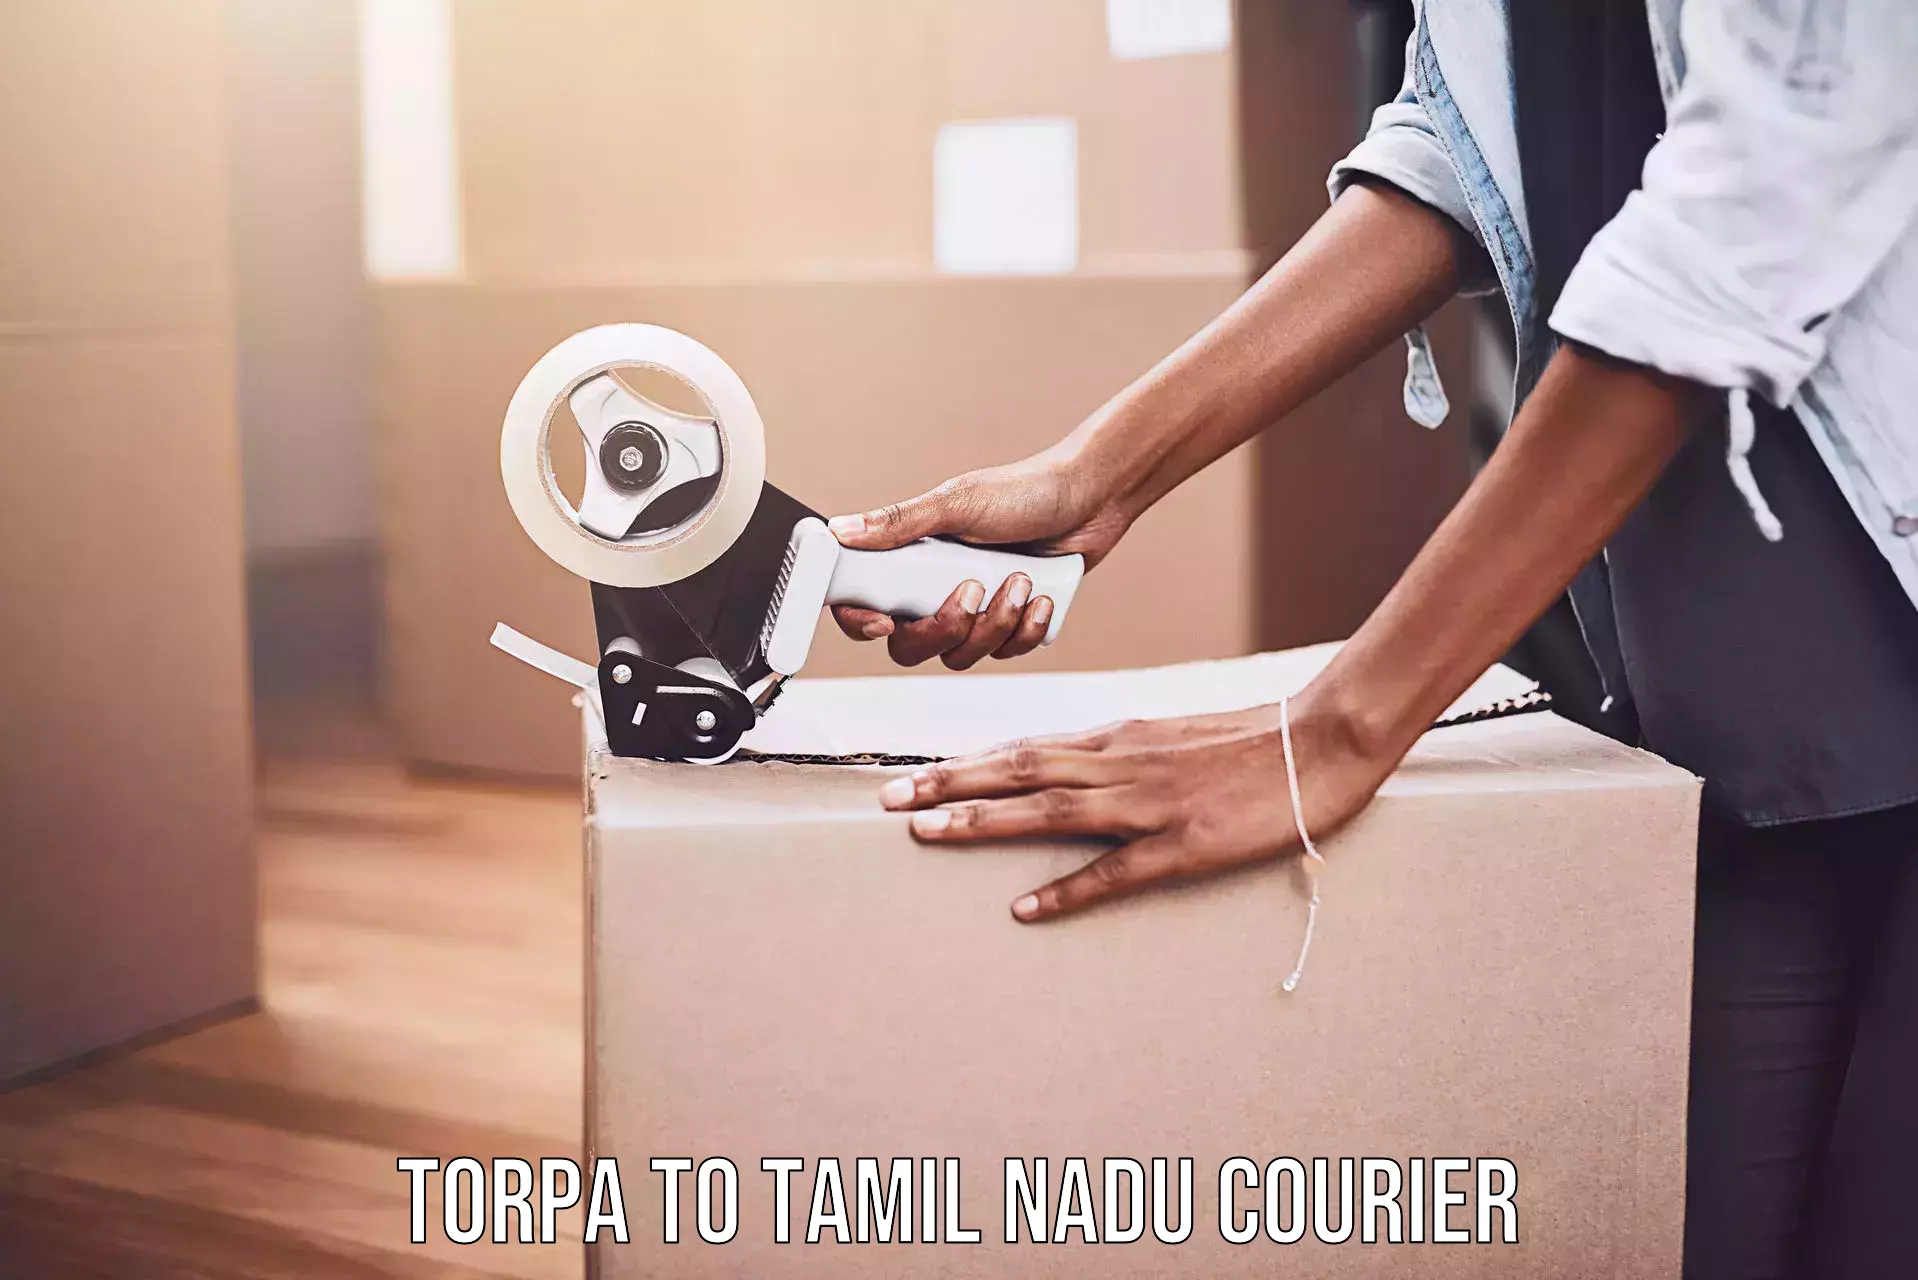 Efficient cargo handling Torpa to Tamil Nadu